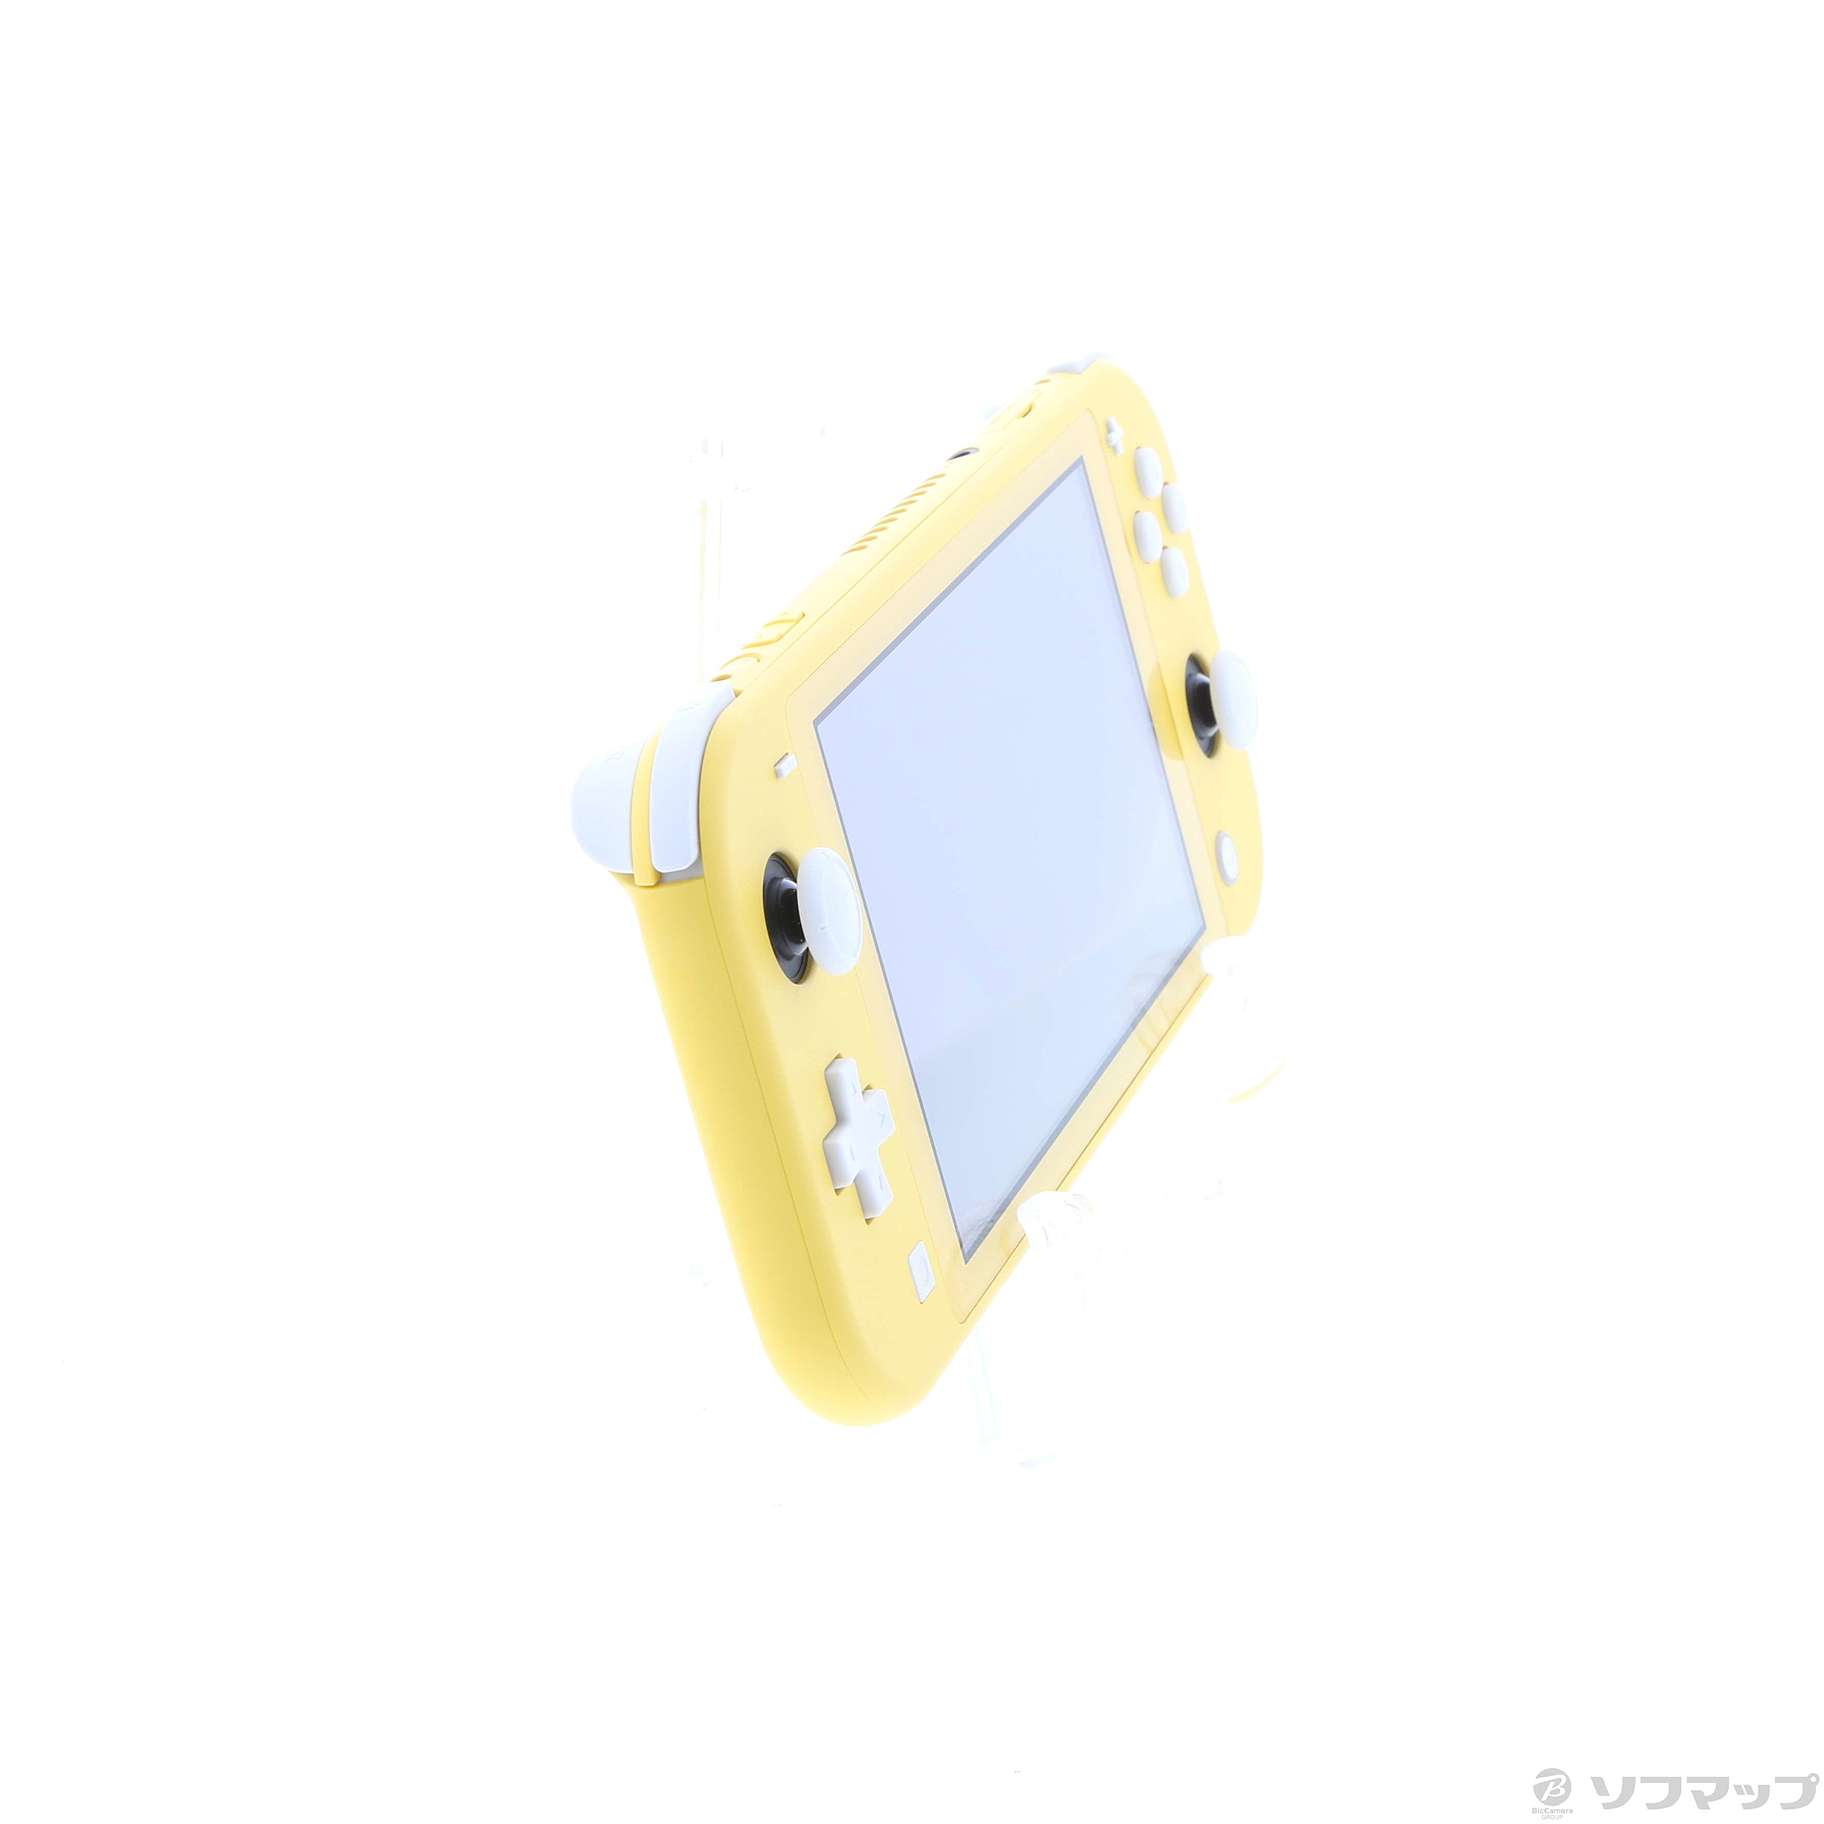 Nintendo Switch Lite イエロー ◇05/13(金)値下げ！